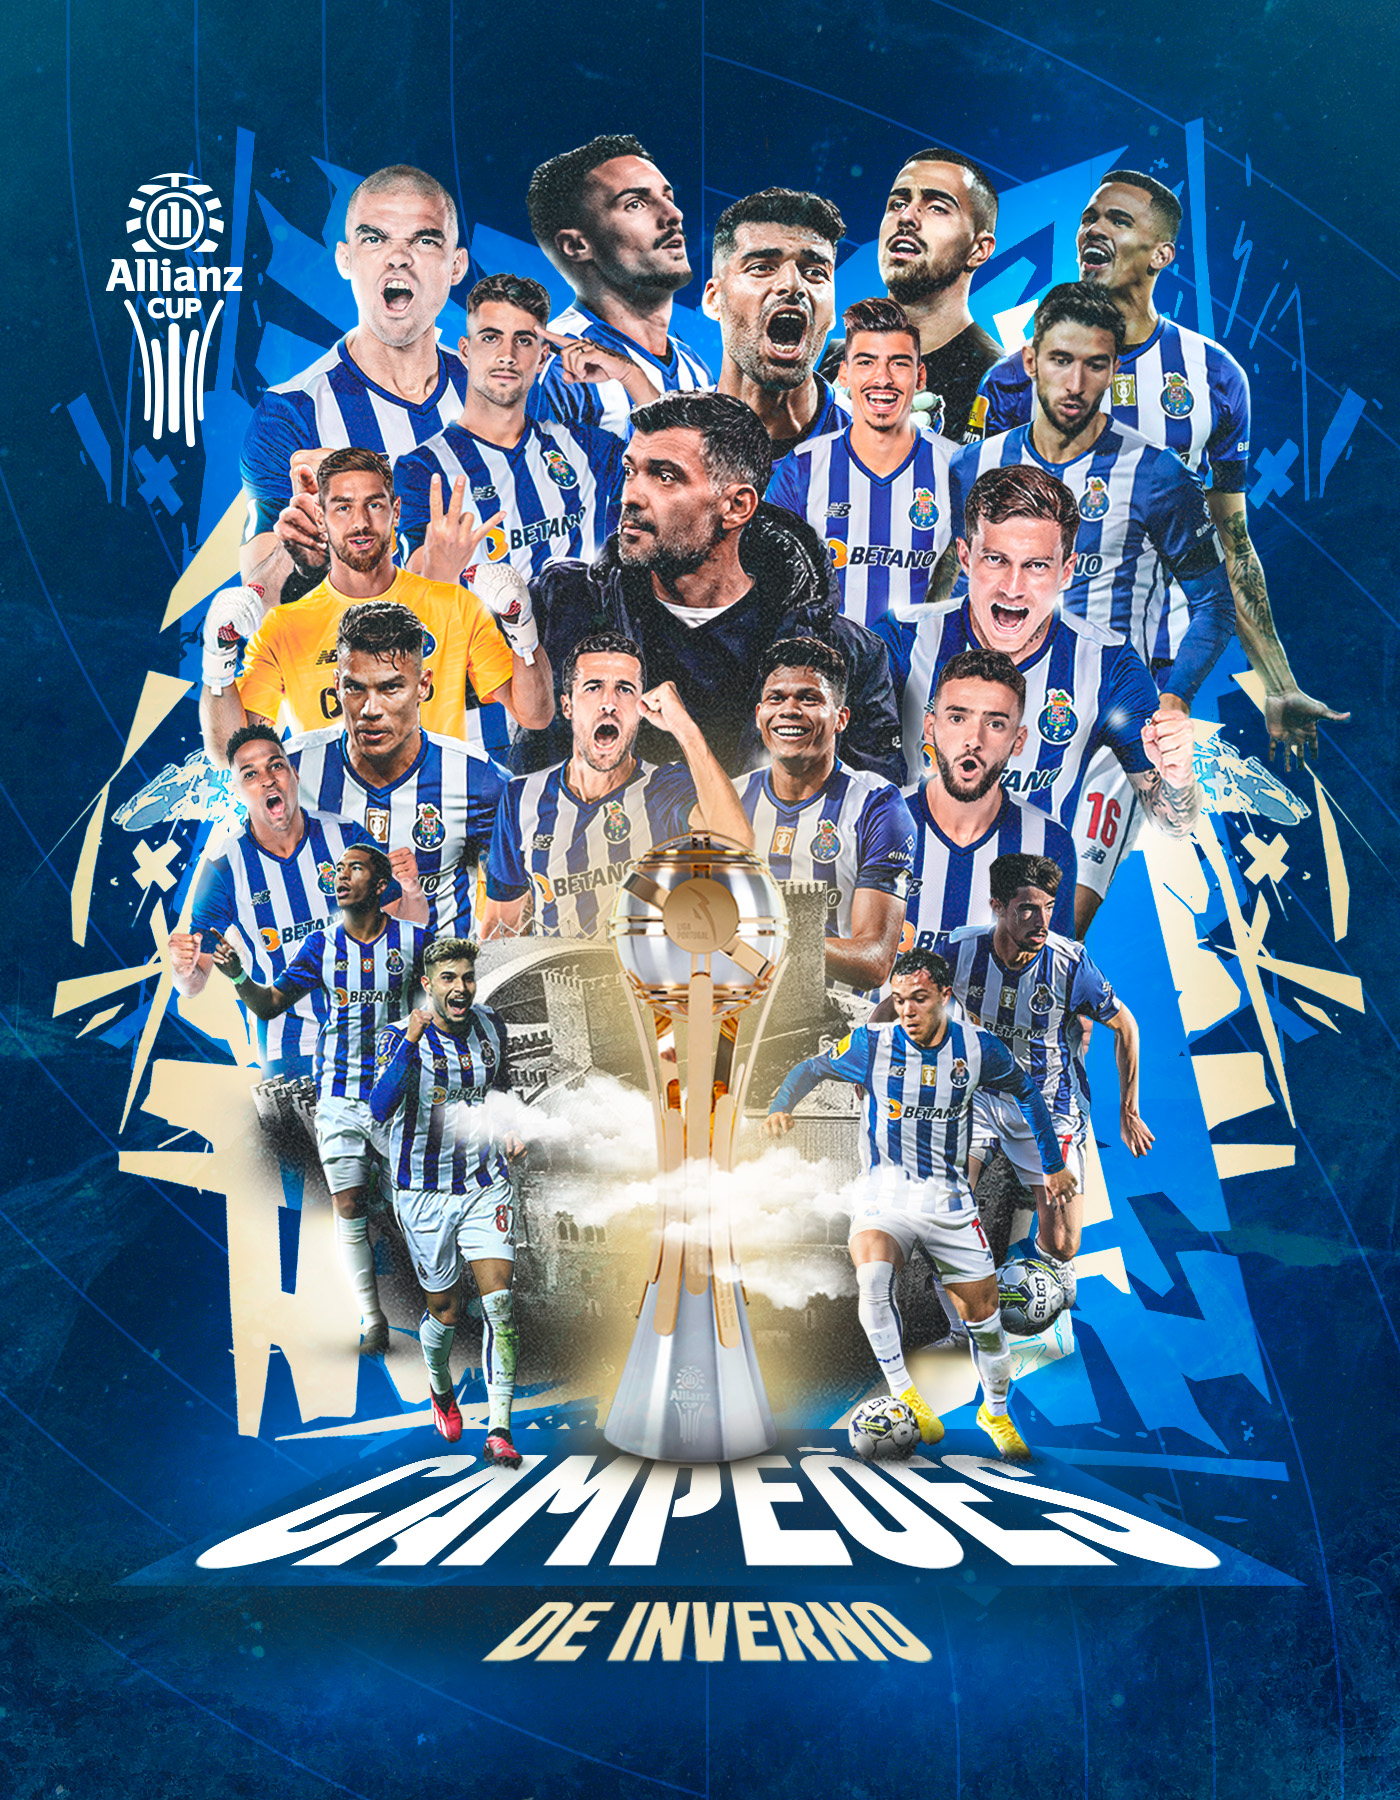 Futebol Clube do Porto - 2023/2024 (Concept/Fantasy Version) by